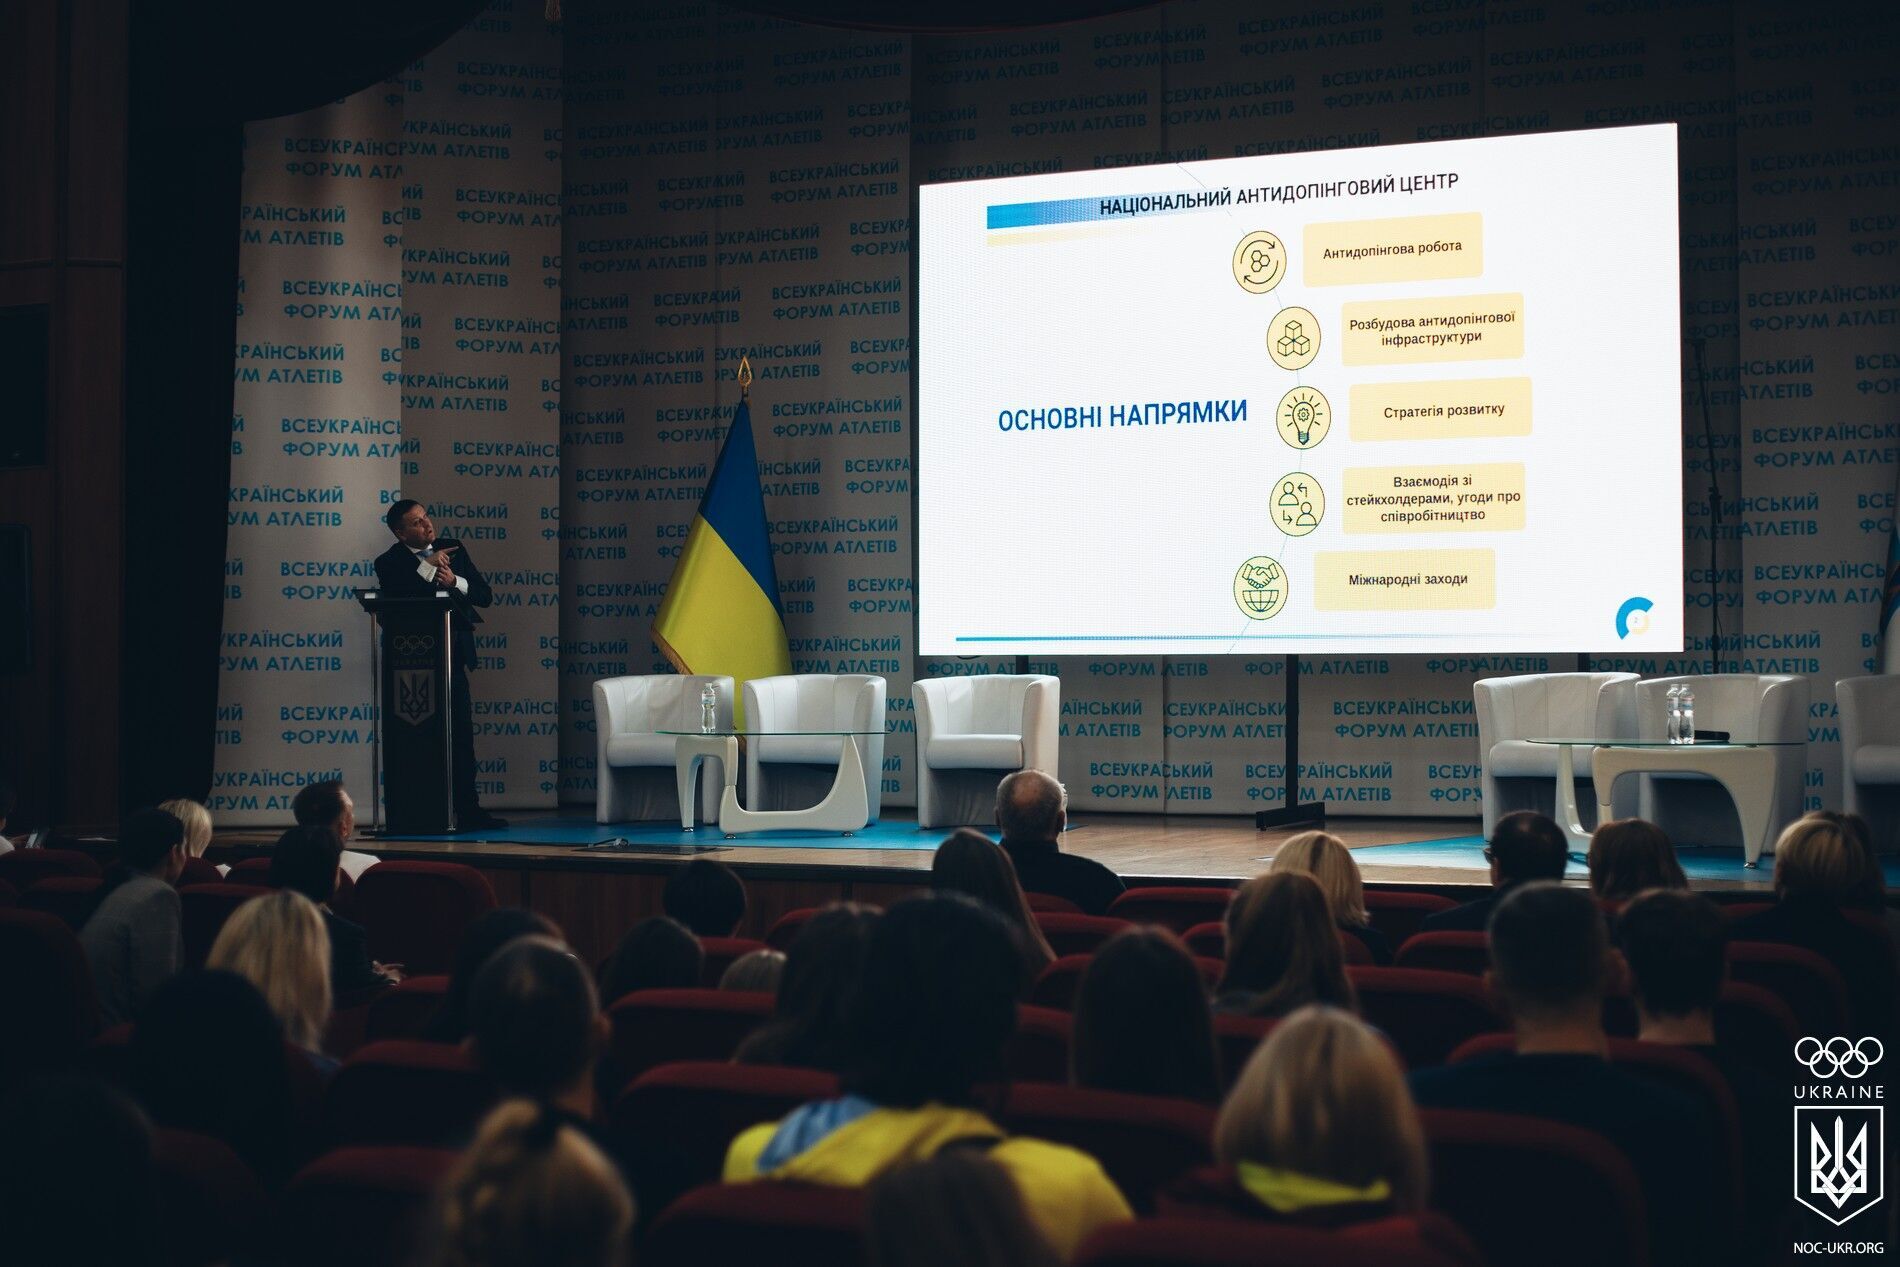 В Киеве состоялся Всеукраинский форум атлетов